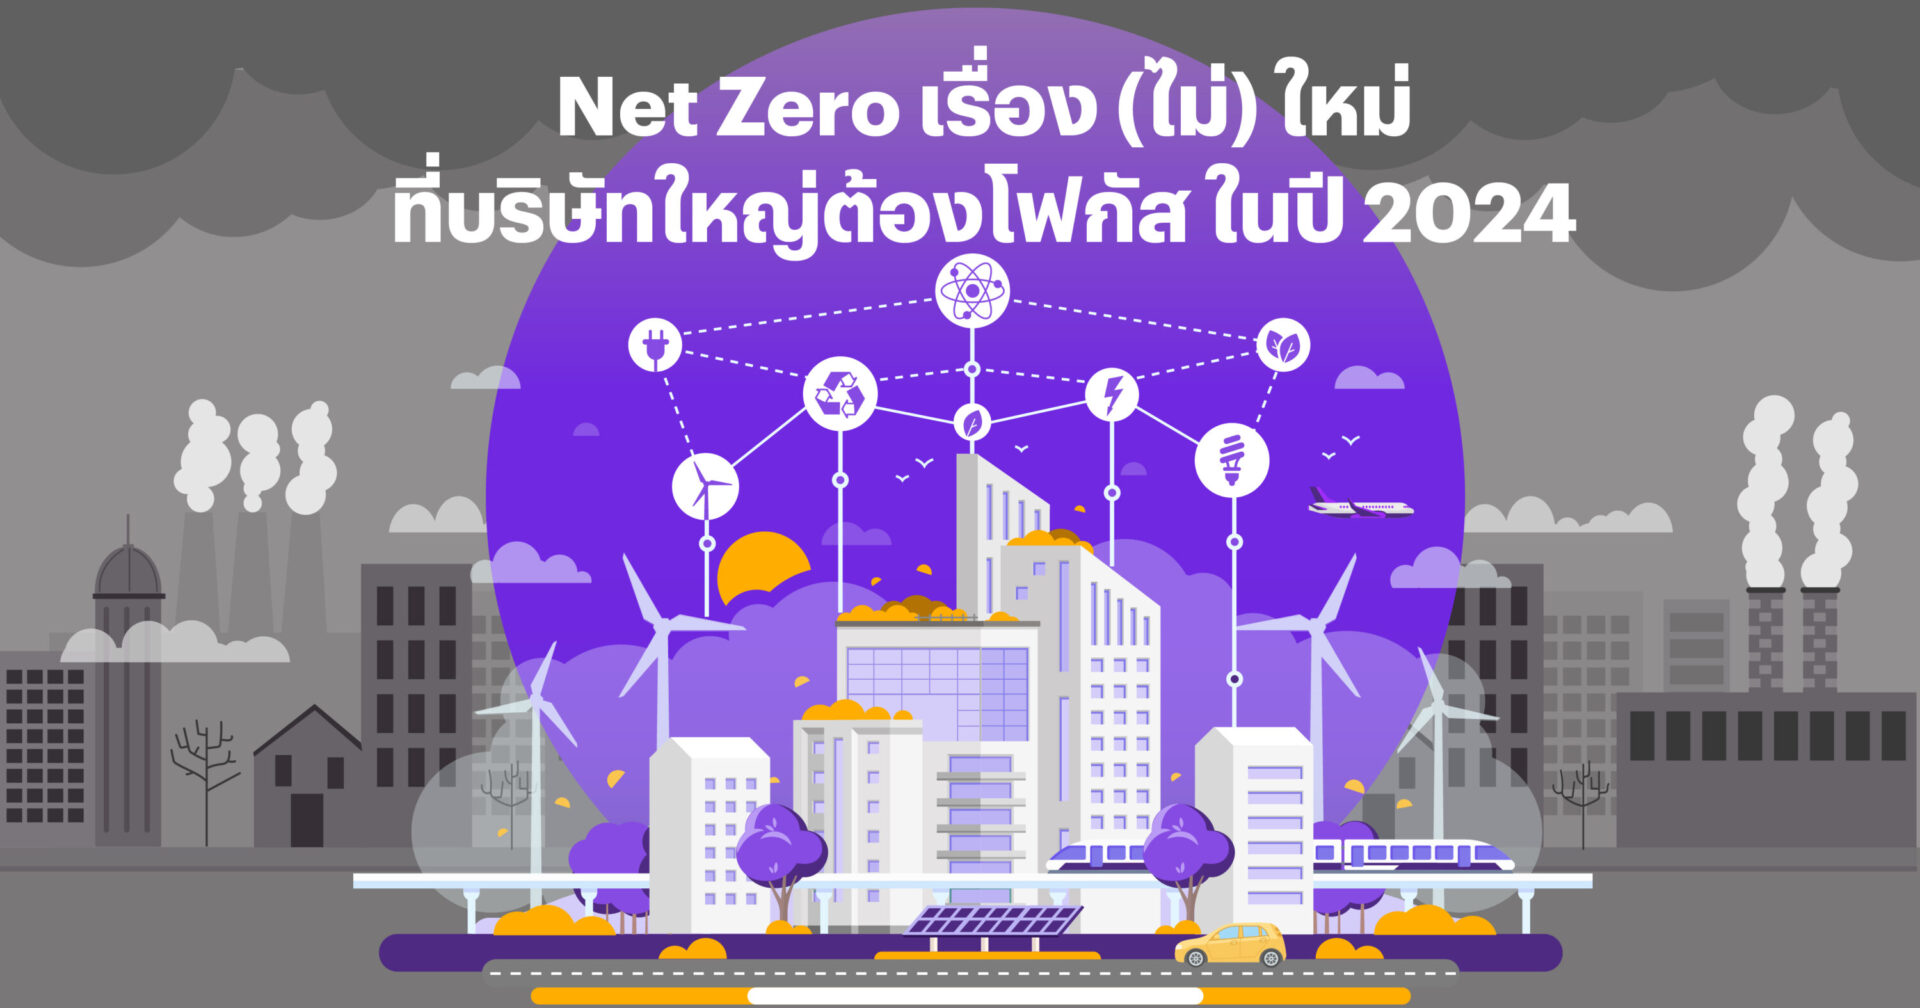 Net Zero เรื่อง(ไม่)ใหม่ ที่บริษัทใหญ่ต้องโฟกัสในปี 2024!